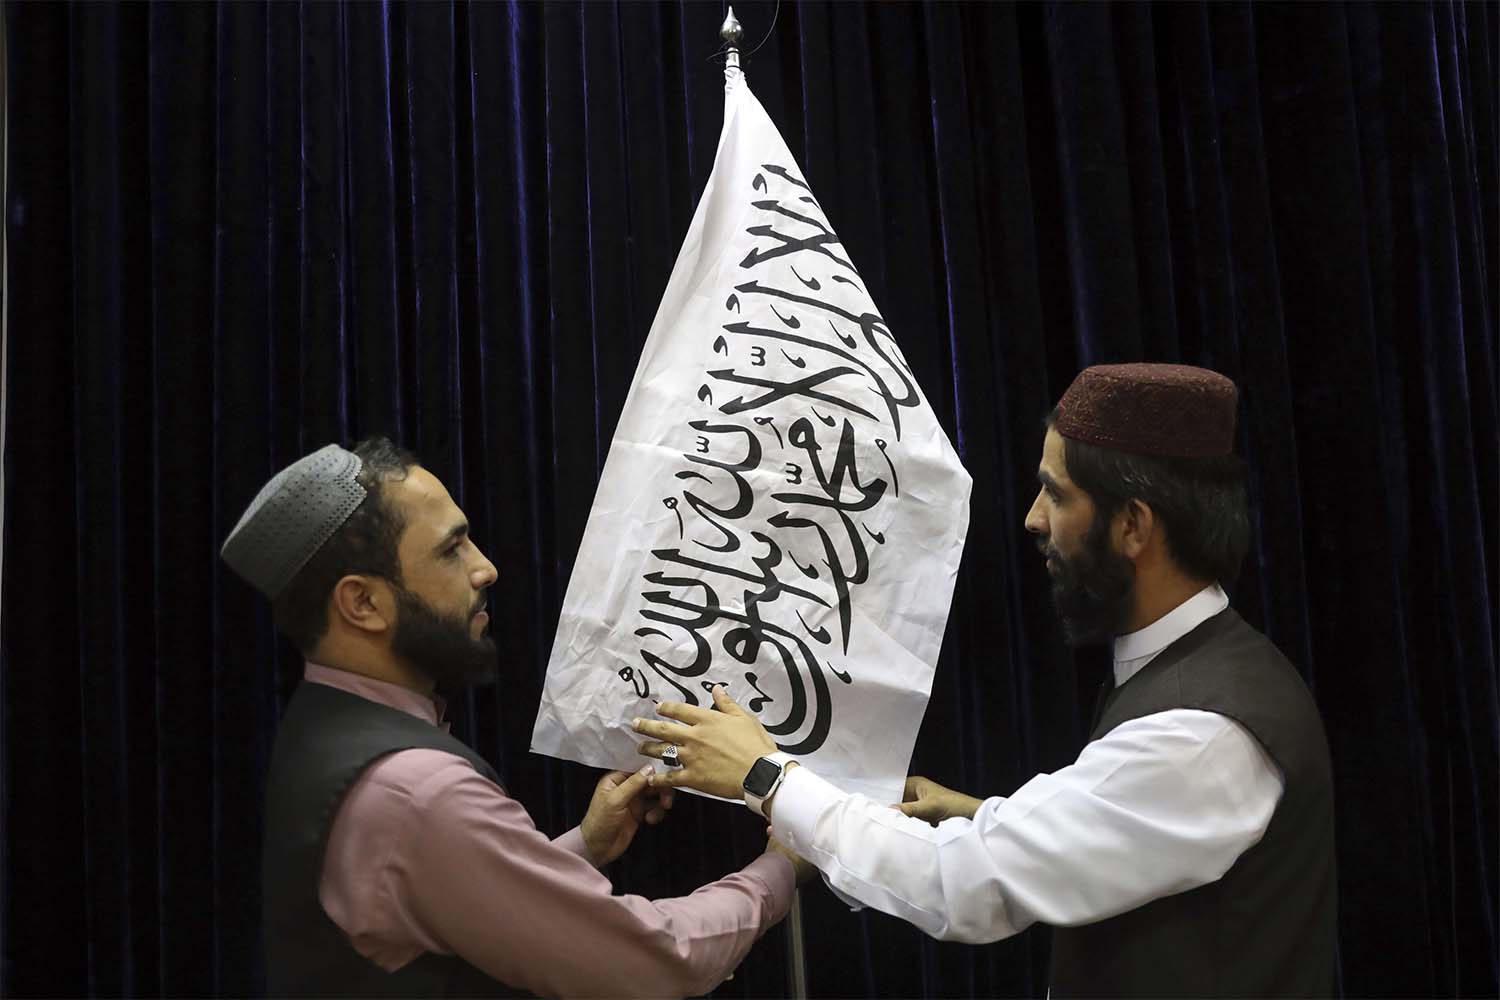 Will the Taliban walk the talk?